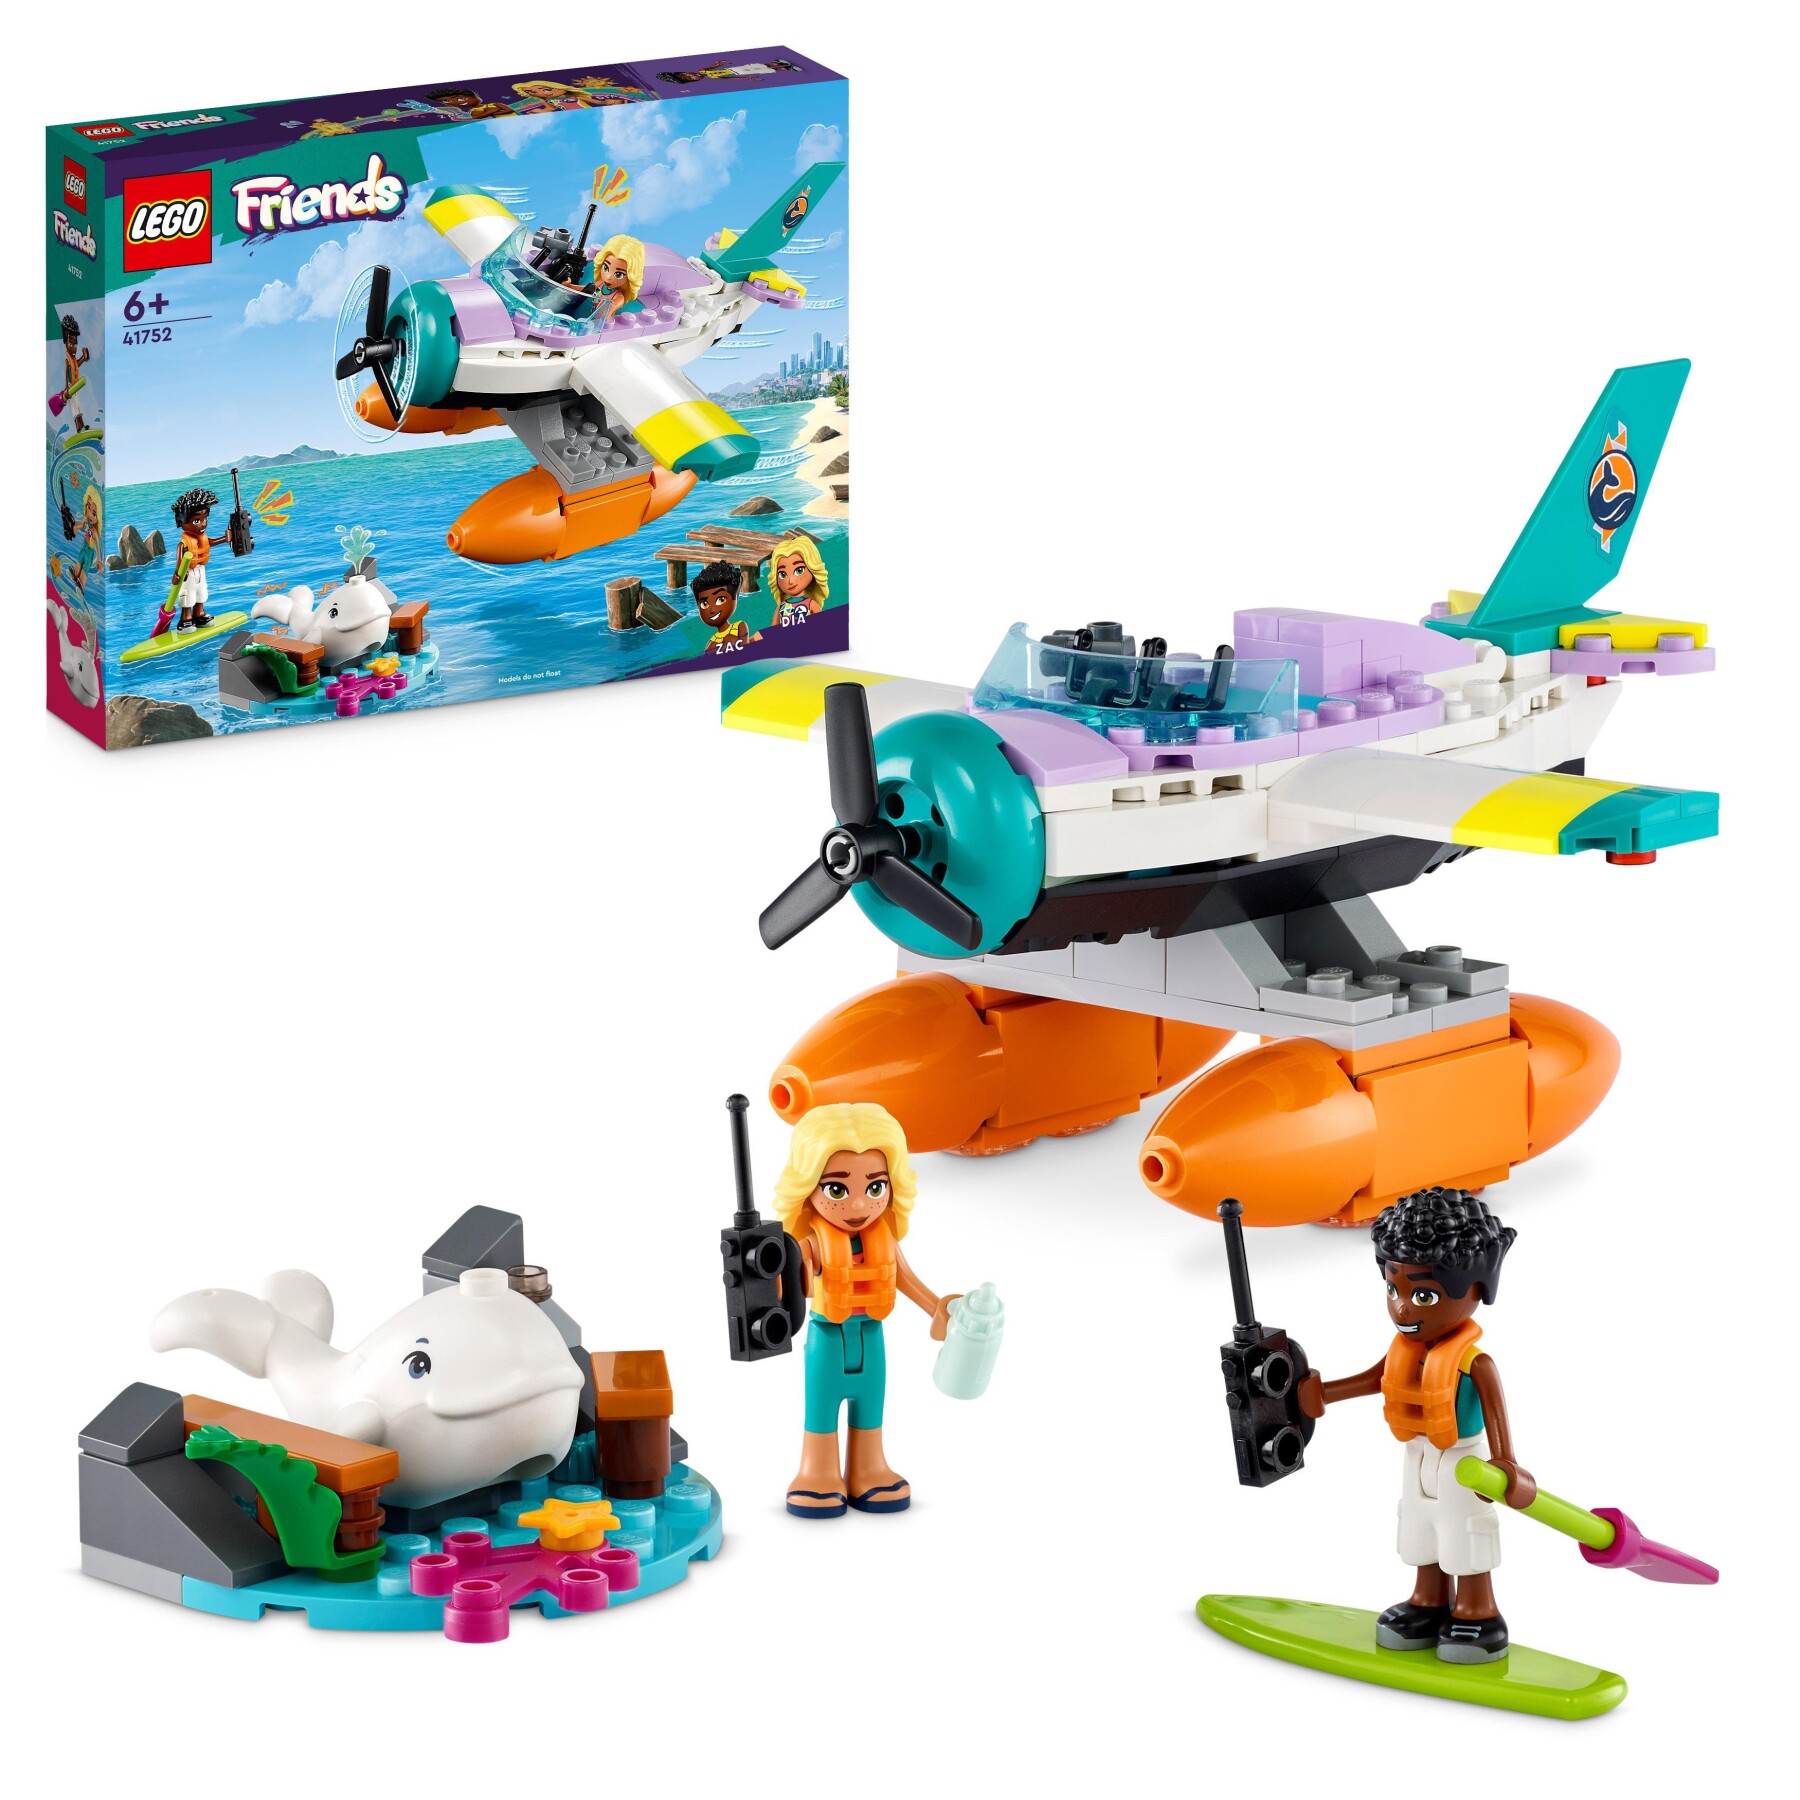 Lego friends 41752 idrovolante di salvataggio, aereo giocattolo